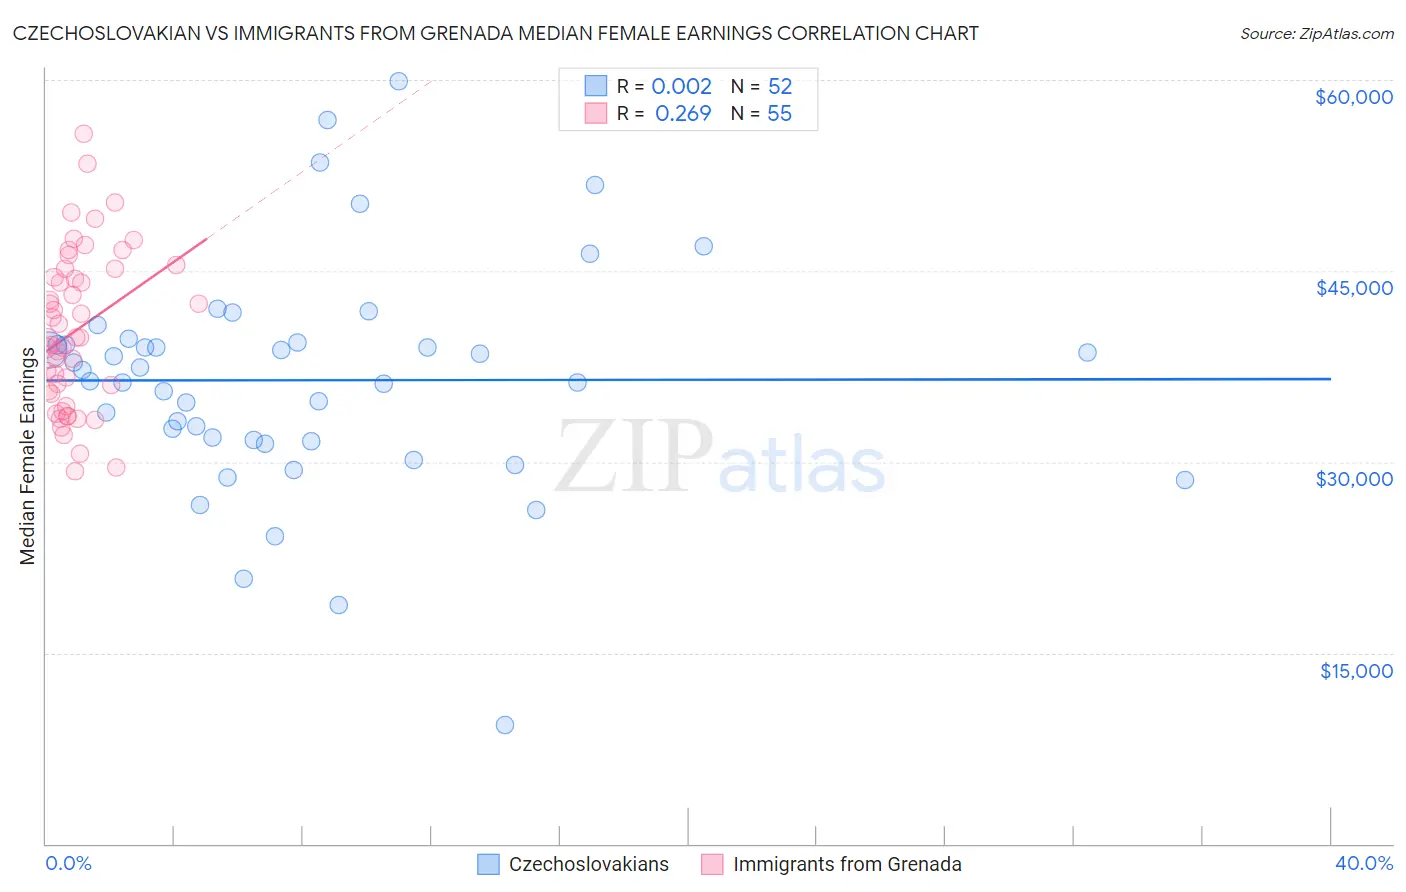 Czechoslovakian vs Immigrants from Grenada Median Female Earnings